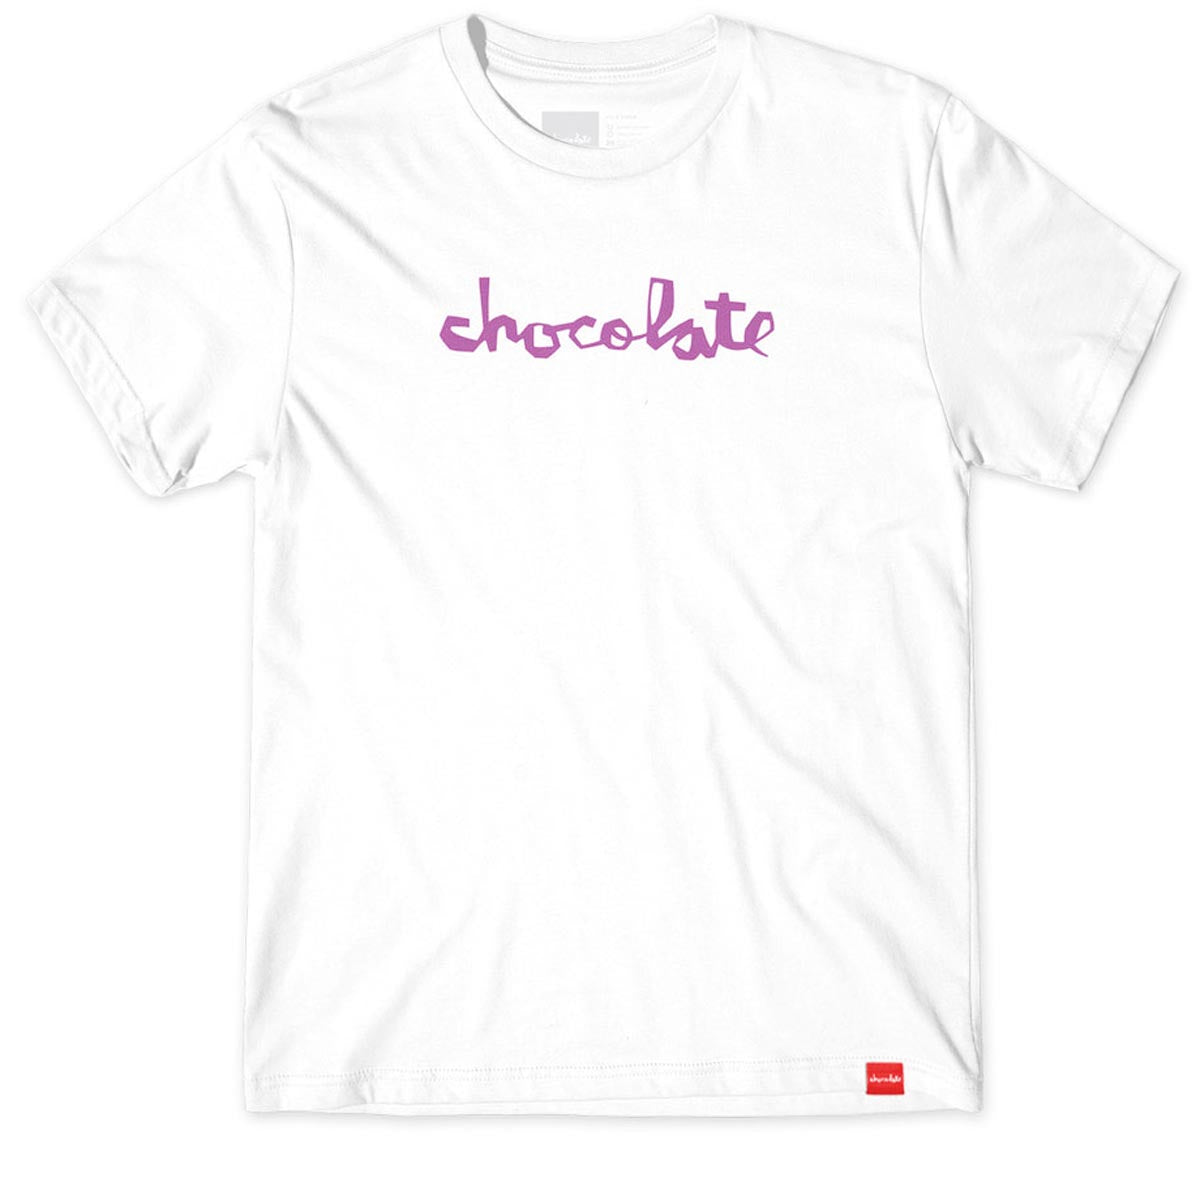 Chocolate Chunk T-Shirt - White/WHite image 1